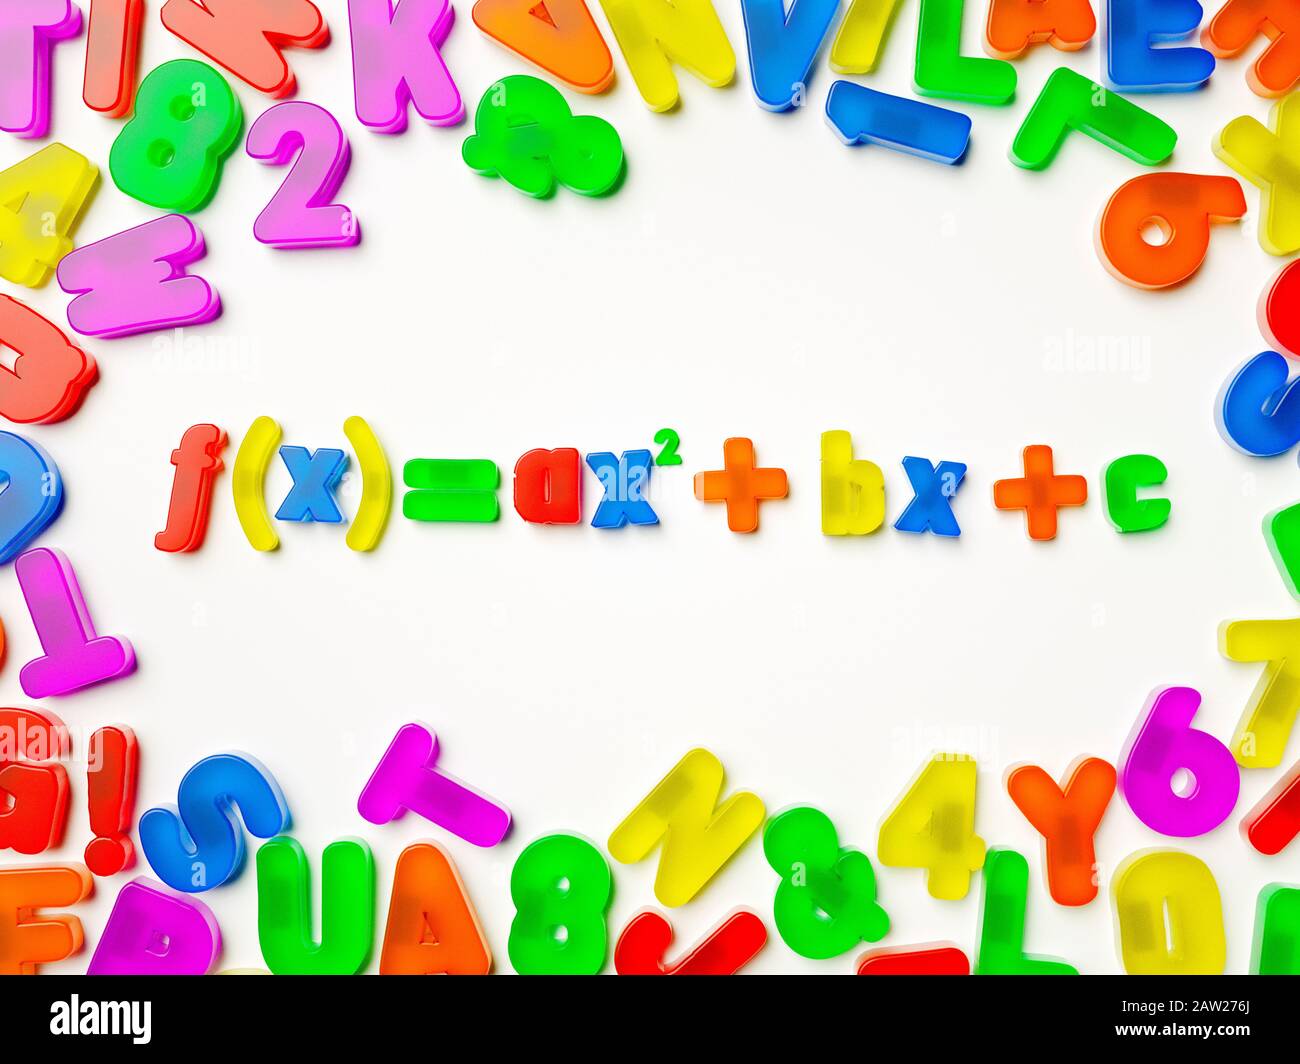 Magnete in plastica multi-colore del frigorifero alfabeto ortografia una formula matematica complessa Foto Stock